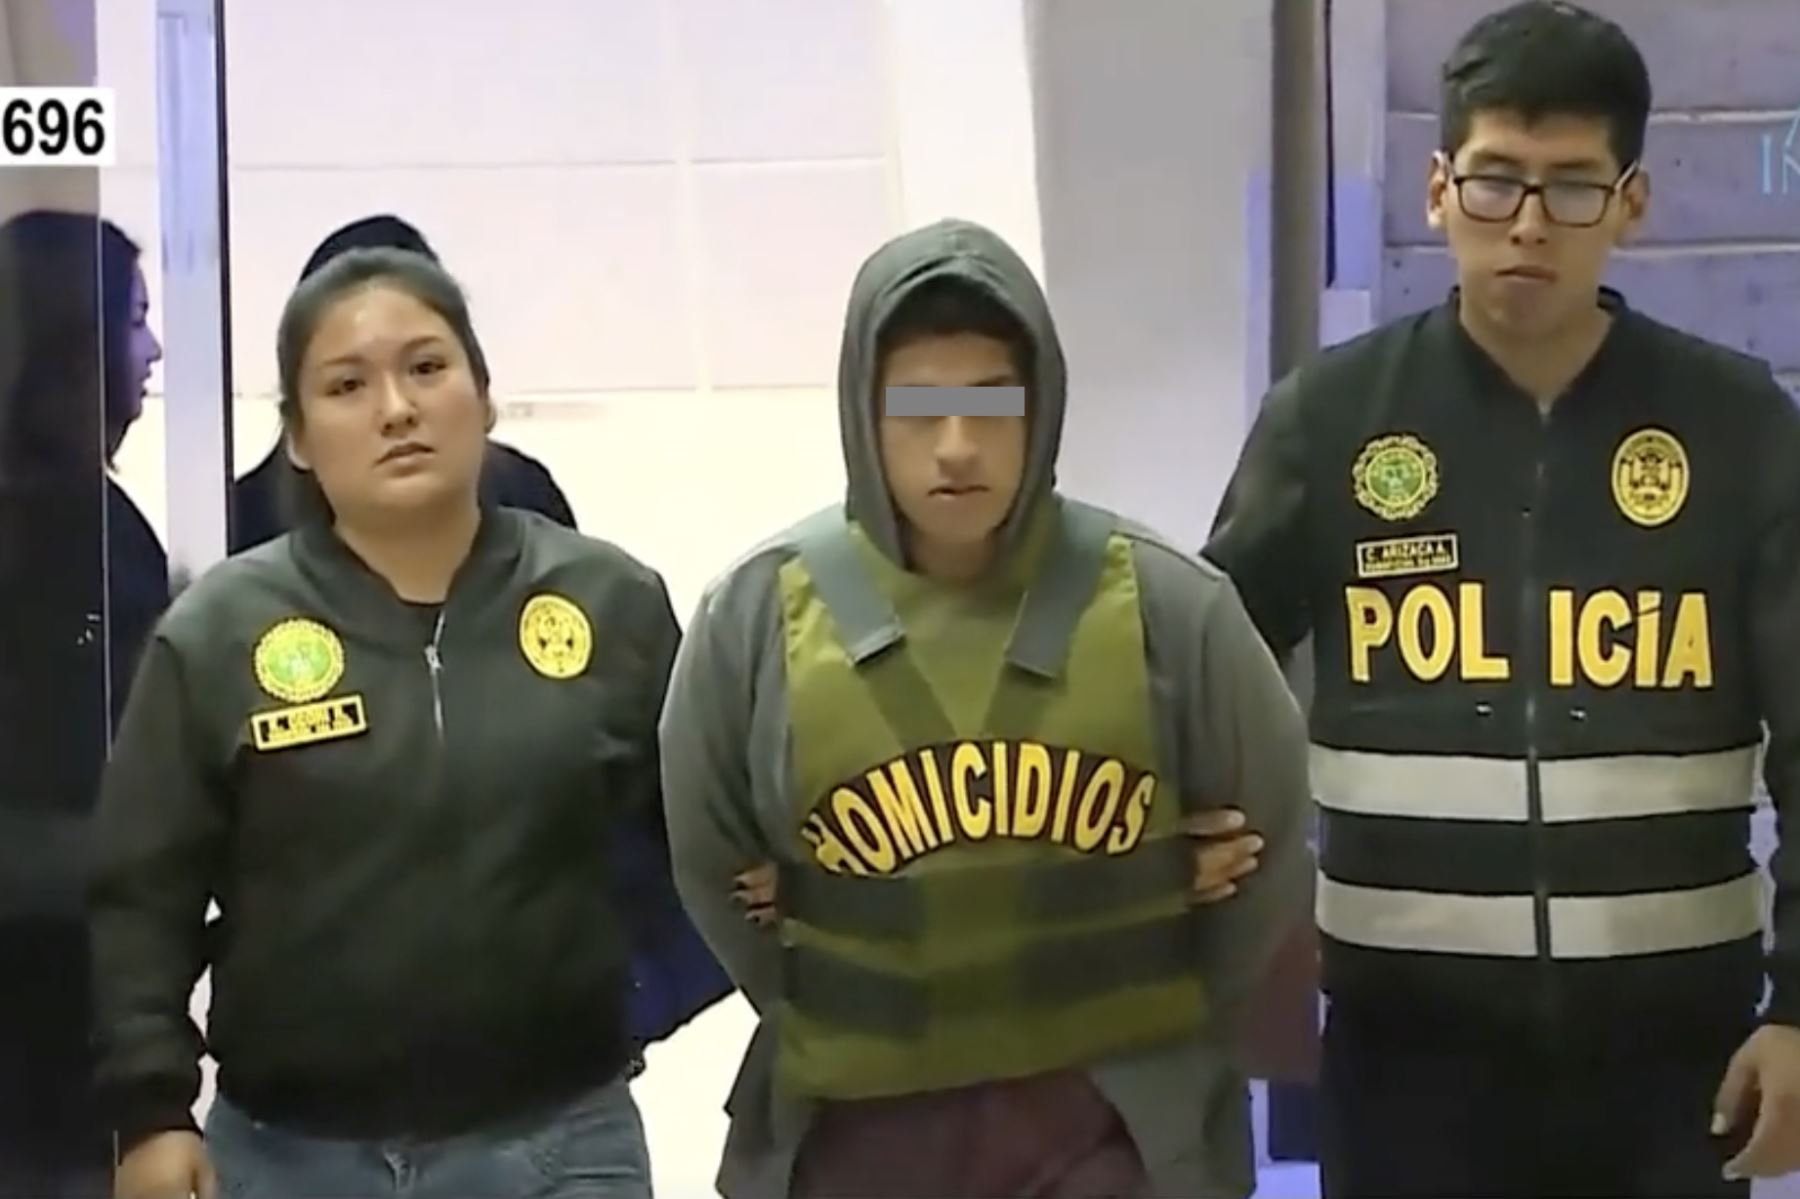 La Fiscalía de Violencia contra la Mujer de El Agustino solicitó la detención judicial en flagrante contra Geancarlos Peralta Chanca, de 18 años. Foto: ANDINA/Captura TV